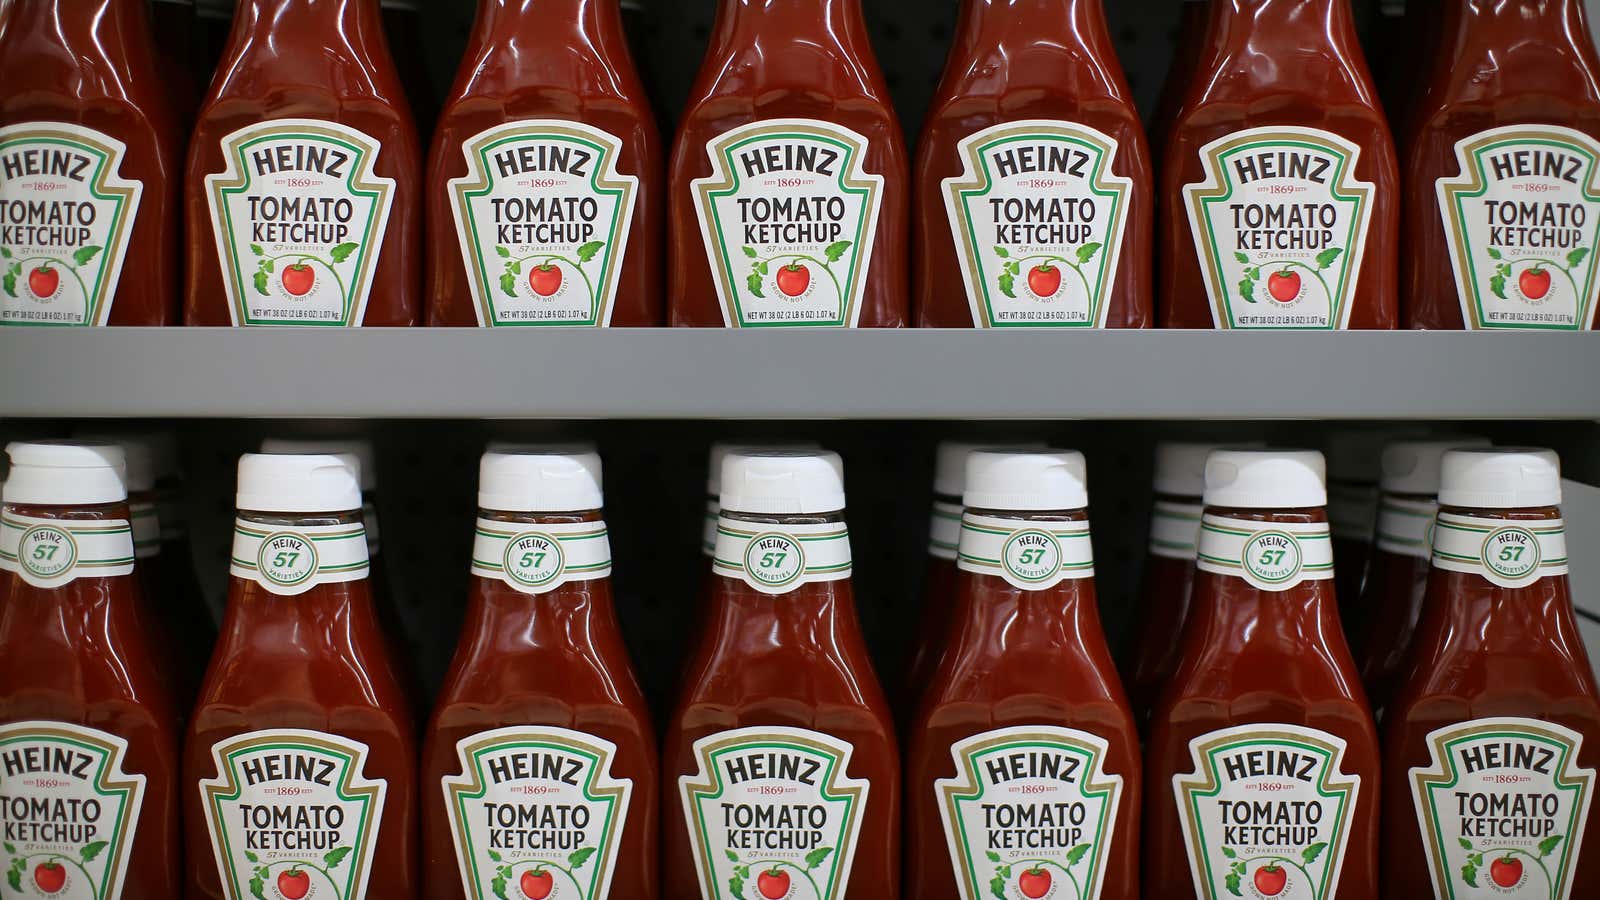 We’re staring down a ketchup war.